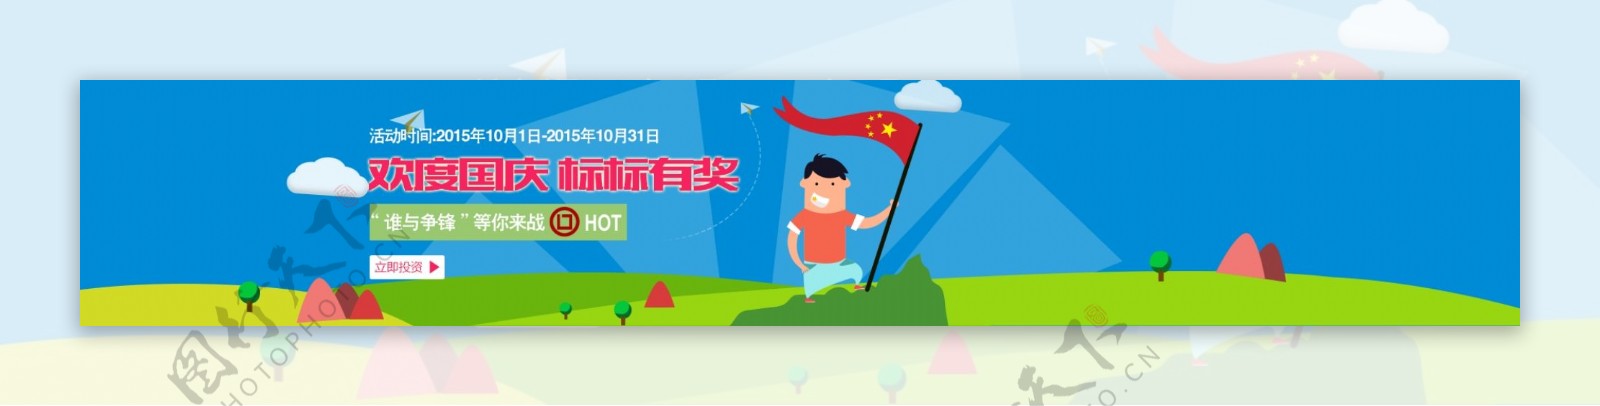 国庆活动投资理财金融banner